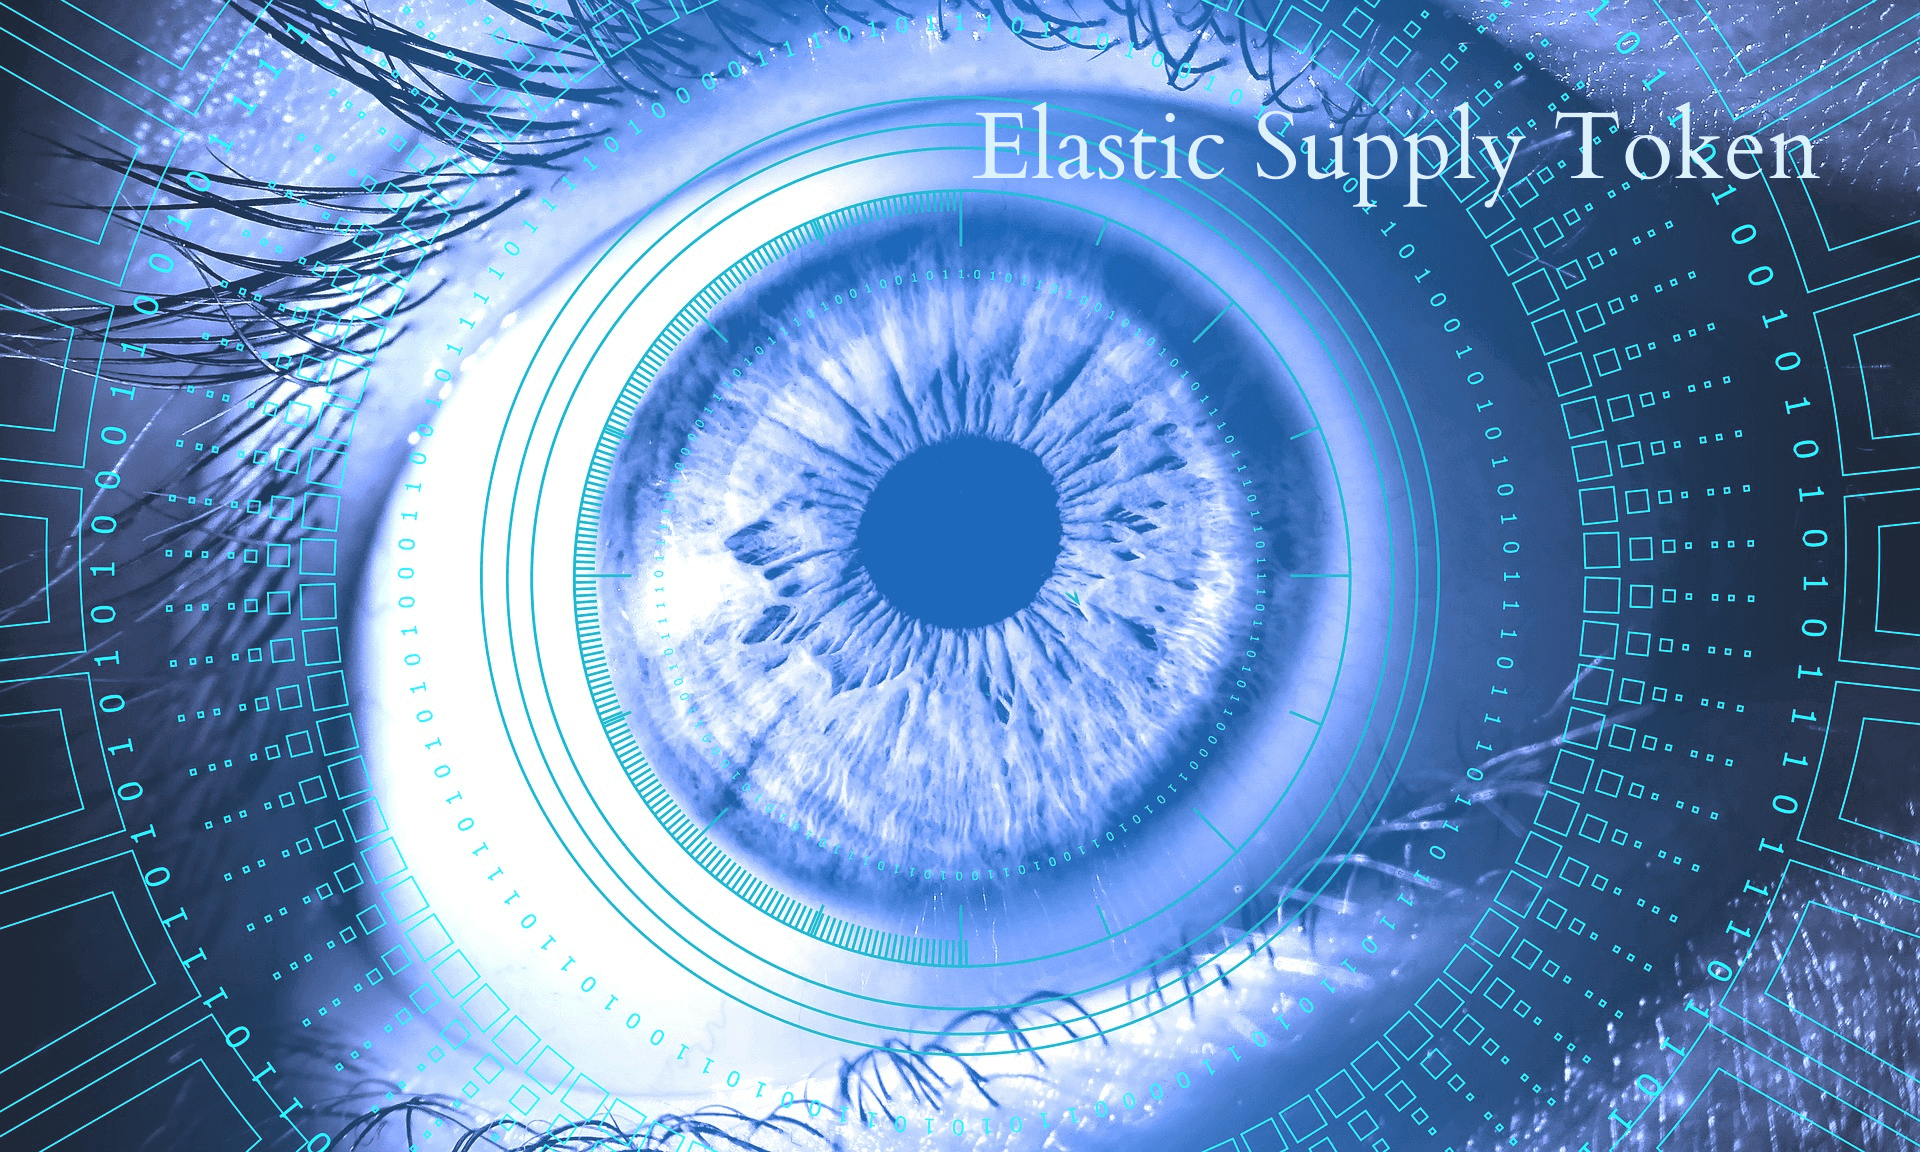 Elastic Supply Token